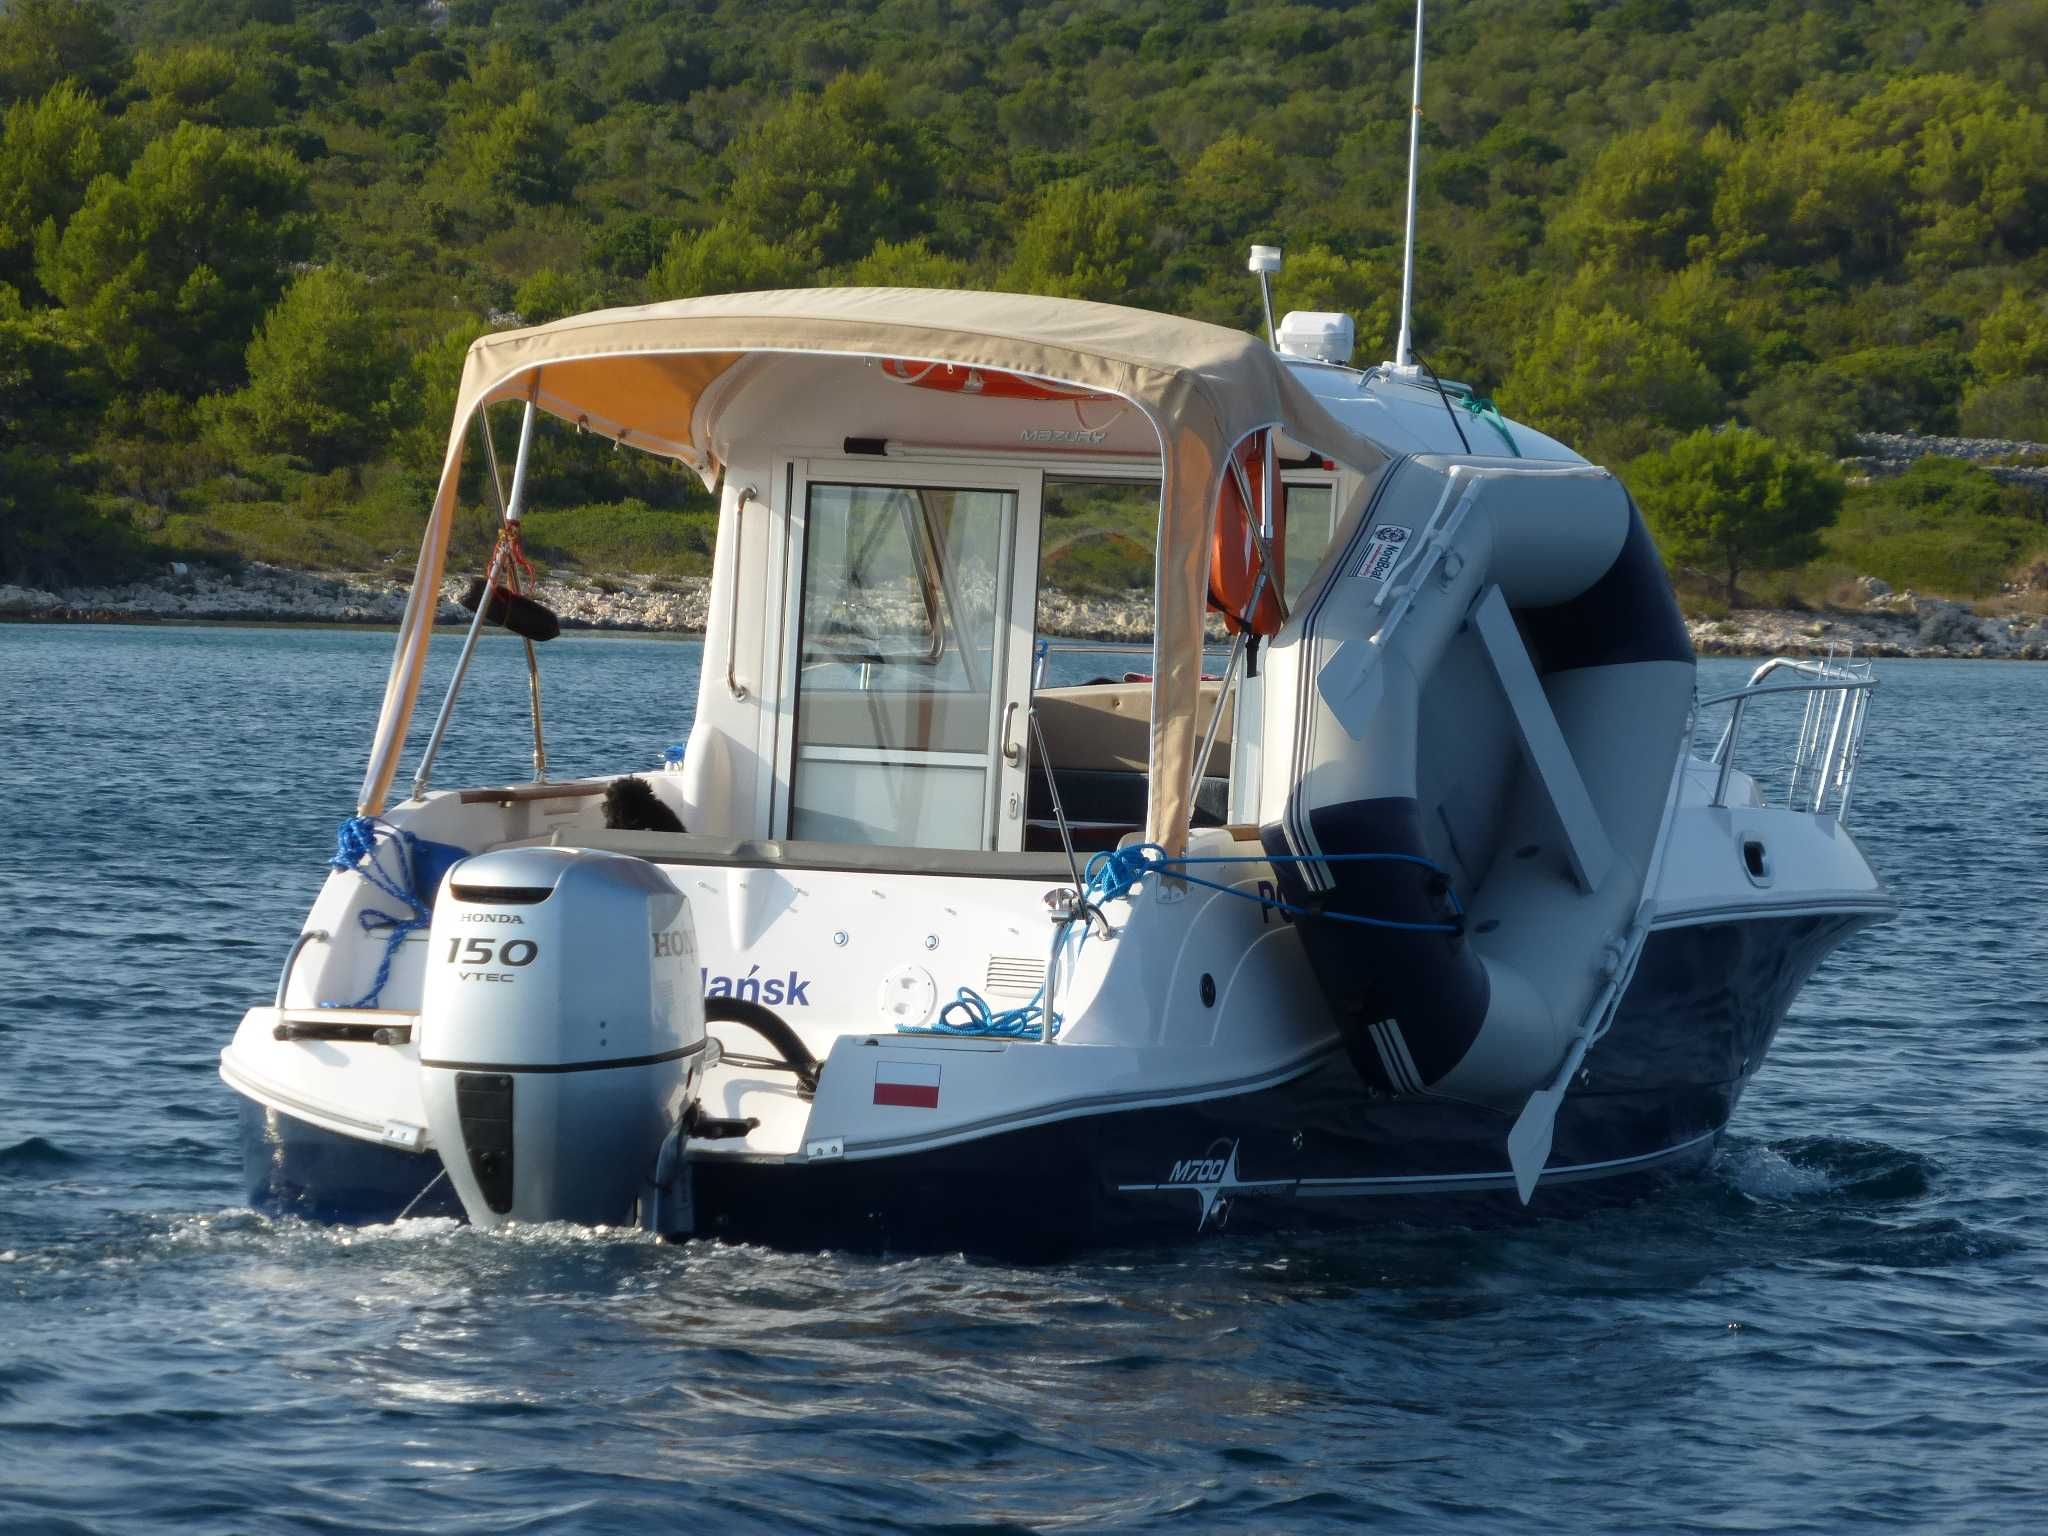 Jacht motorowy Mazury 700 z fotowoltaiką i przyczepą